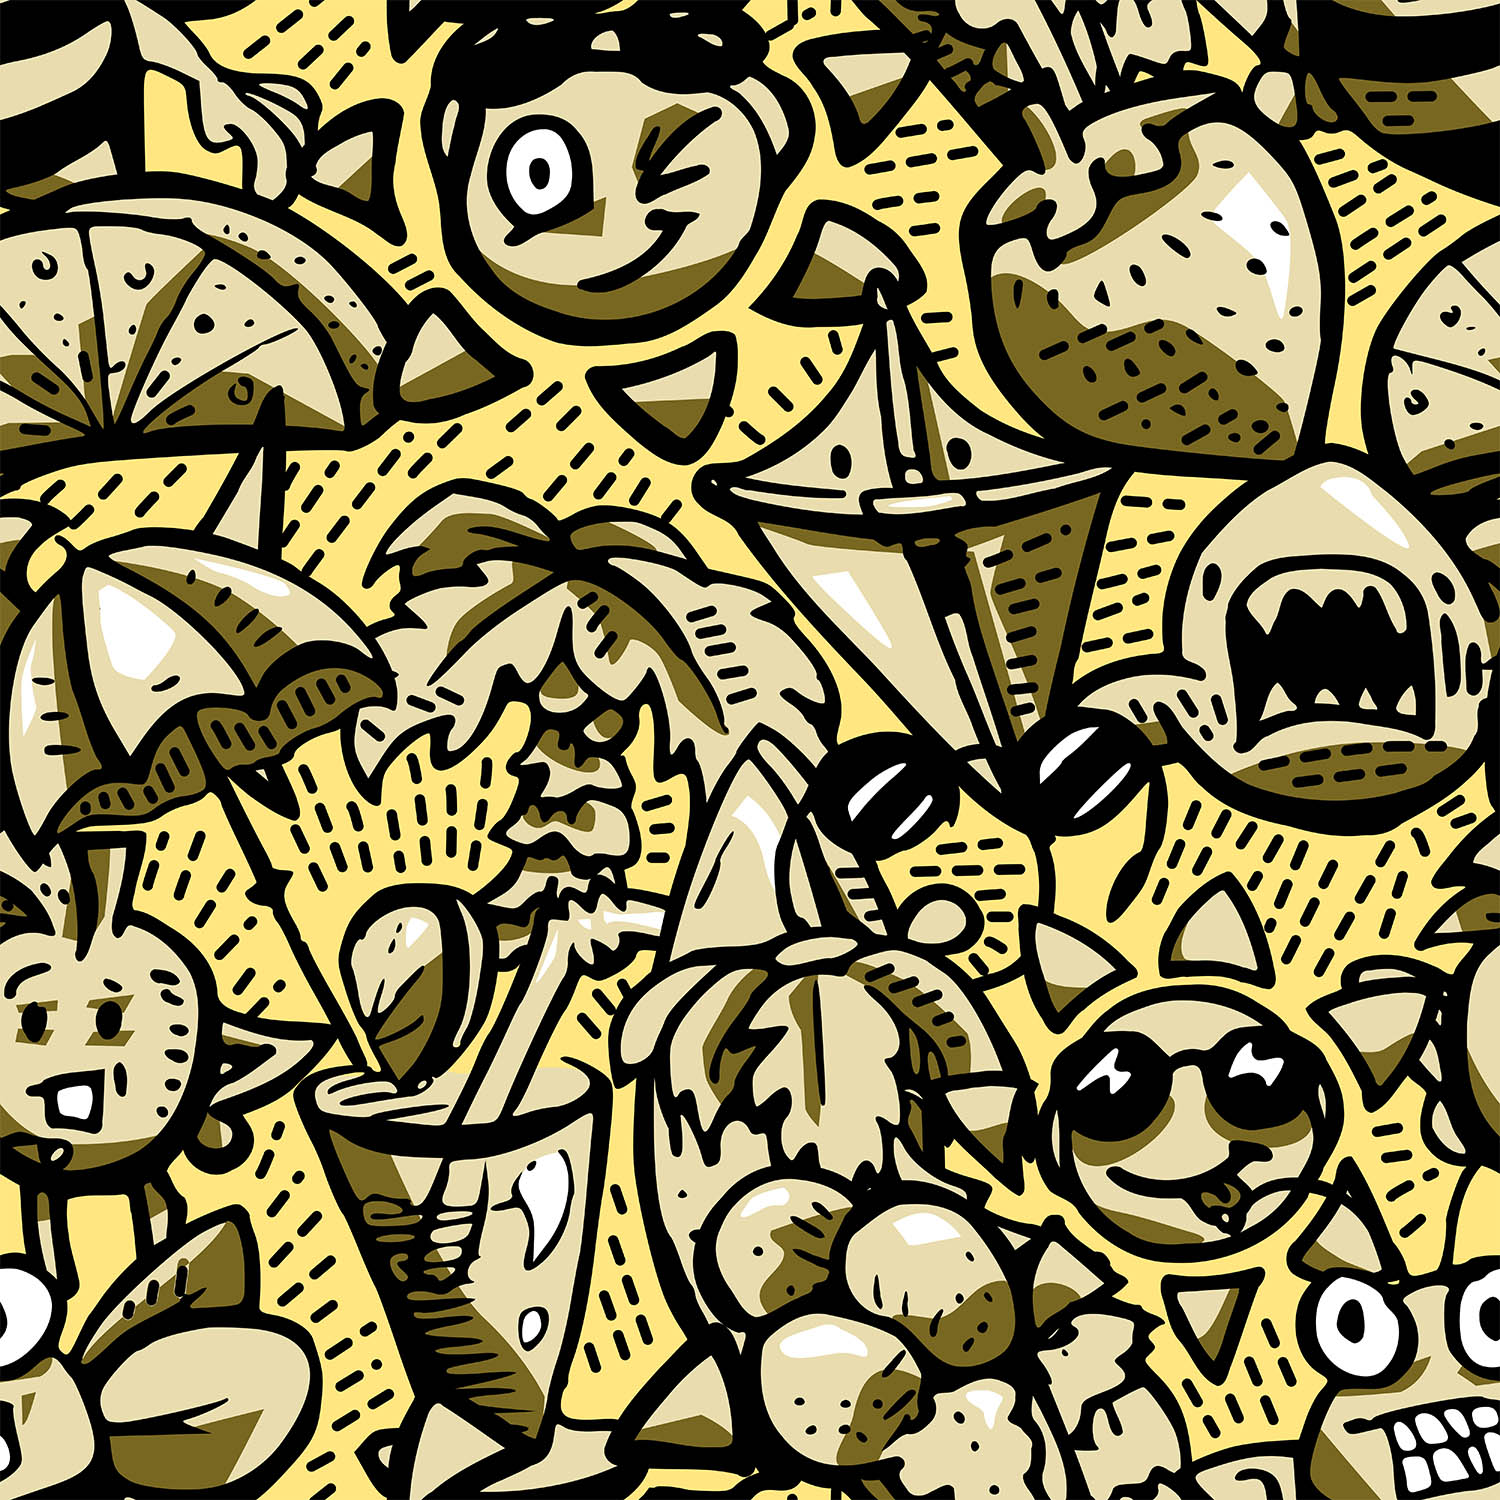 zomer doodle illustratie - geel met zwart kopirenjpg